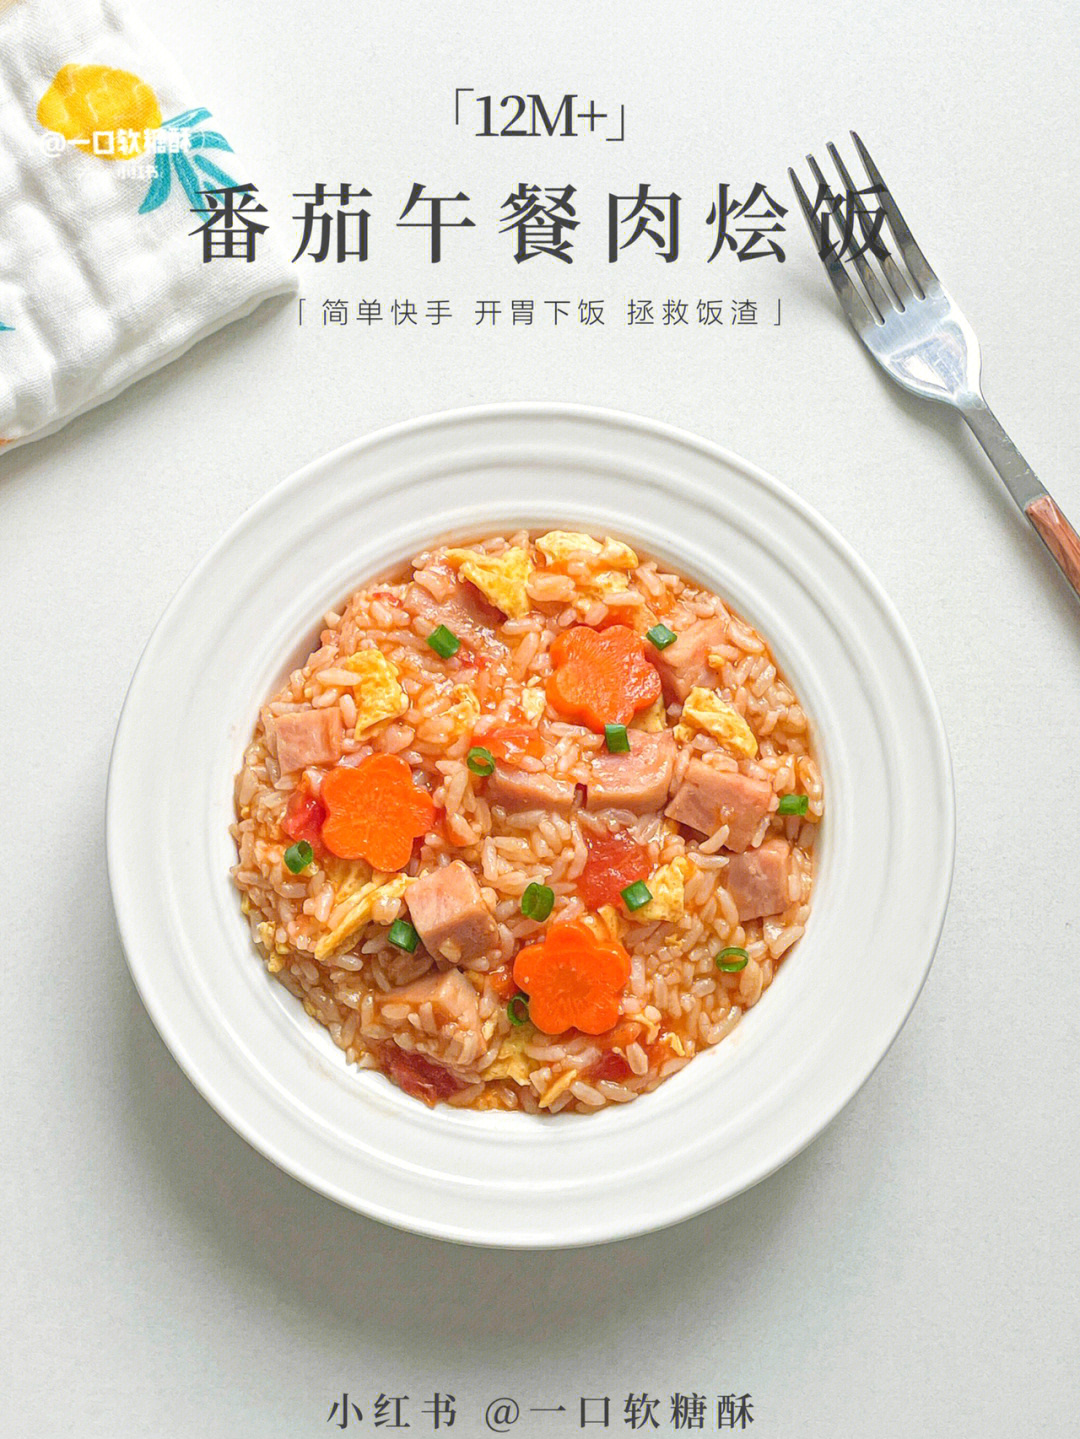 06准备食材-番茄-米饭-午餐肉-鸡蛋-胡萝卜99699